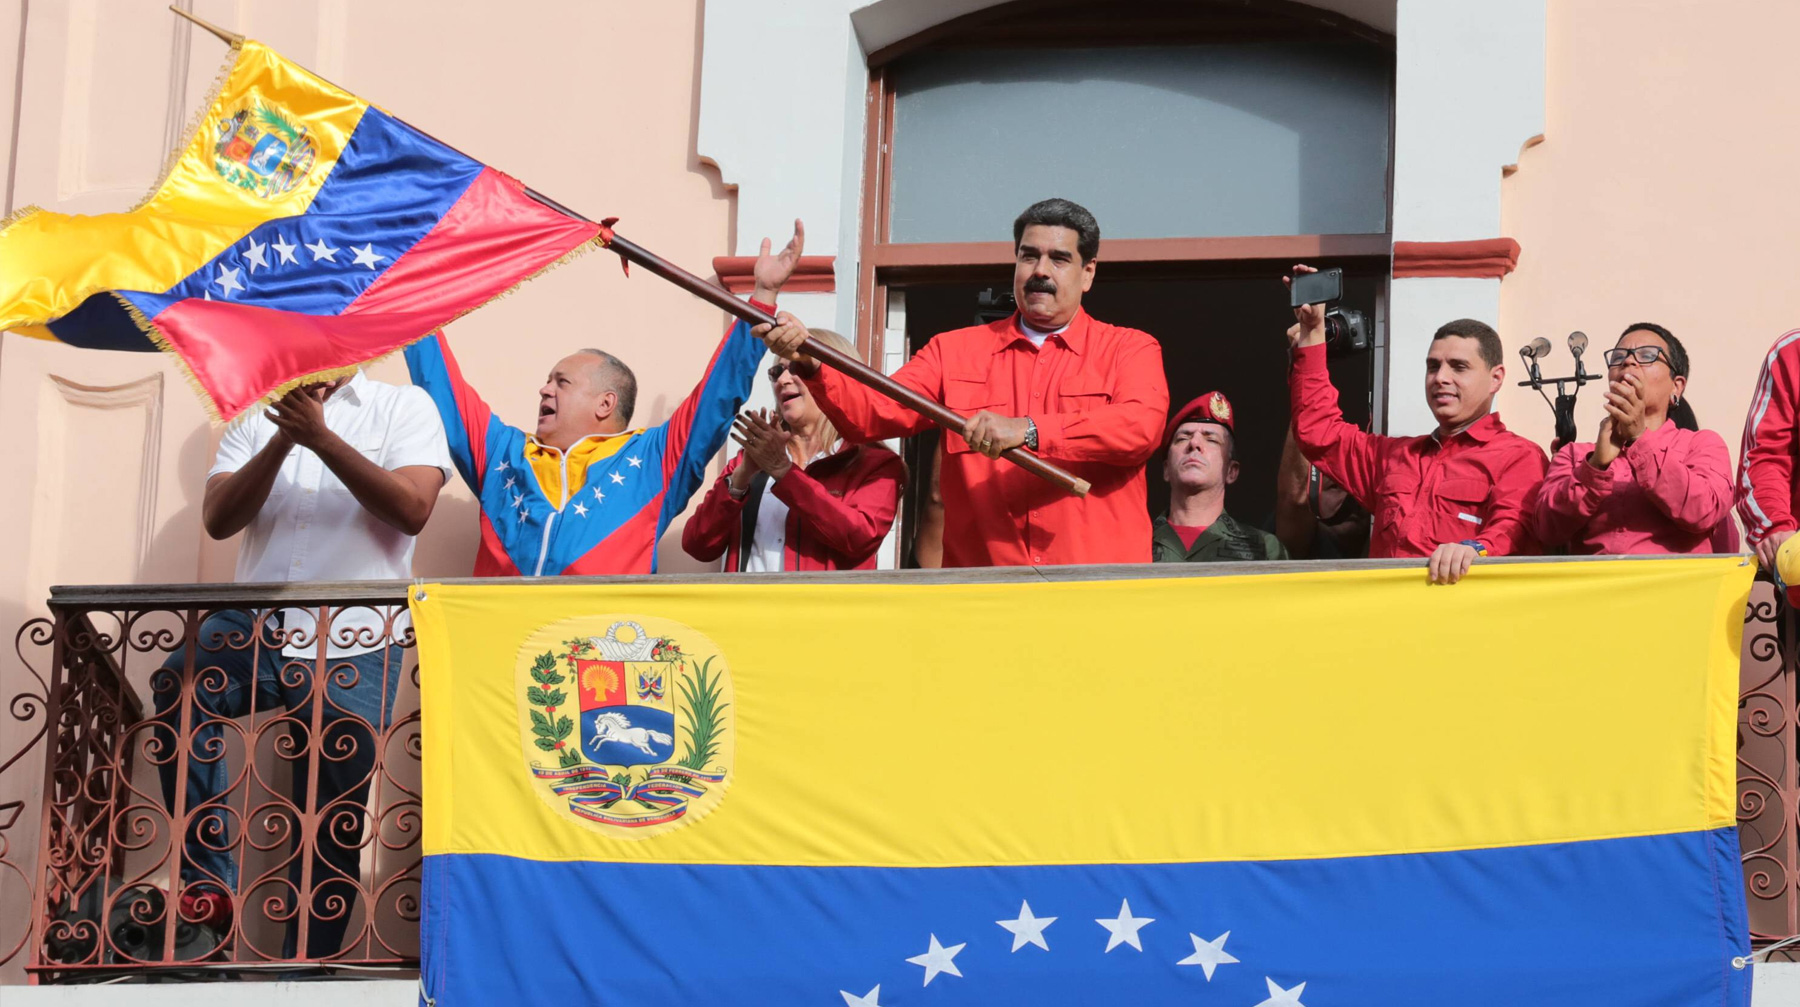 Москва предостерегла третьи страны от вмешательства в дела республики Президент Венесуэлы Николас Мадуро, участвующий в митинге в поддержку своего правительства в Каракасе, Венесуэла 23 января 2019 года